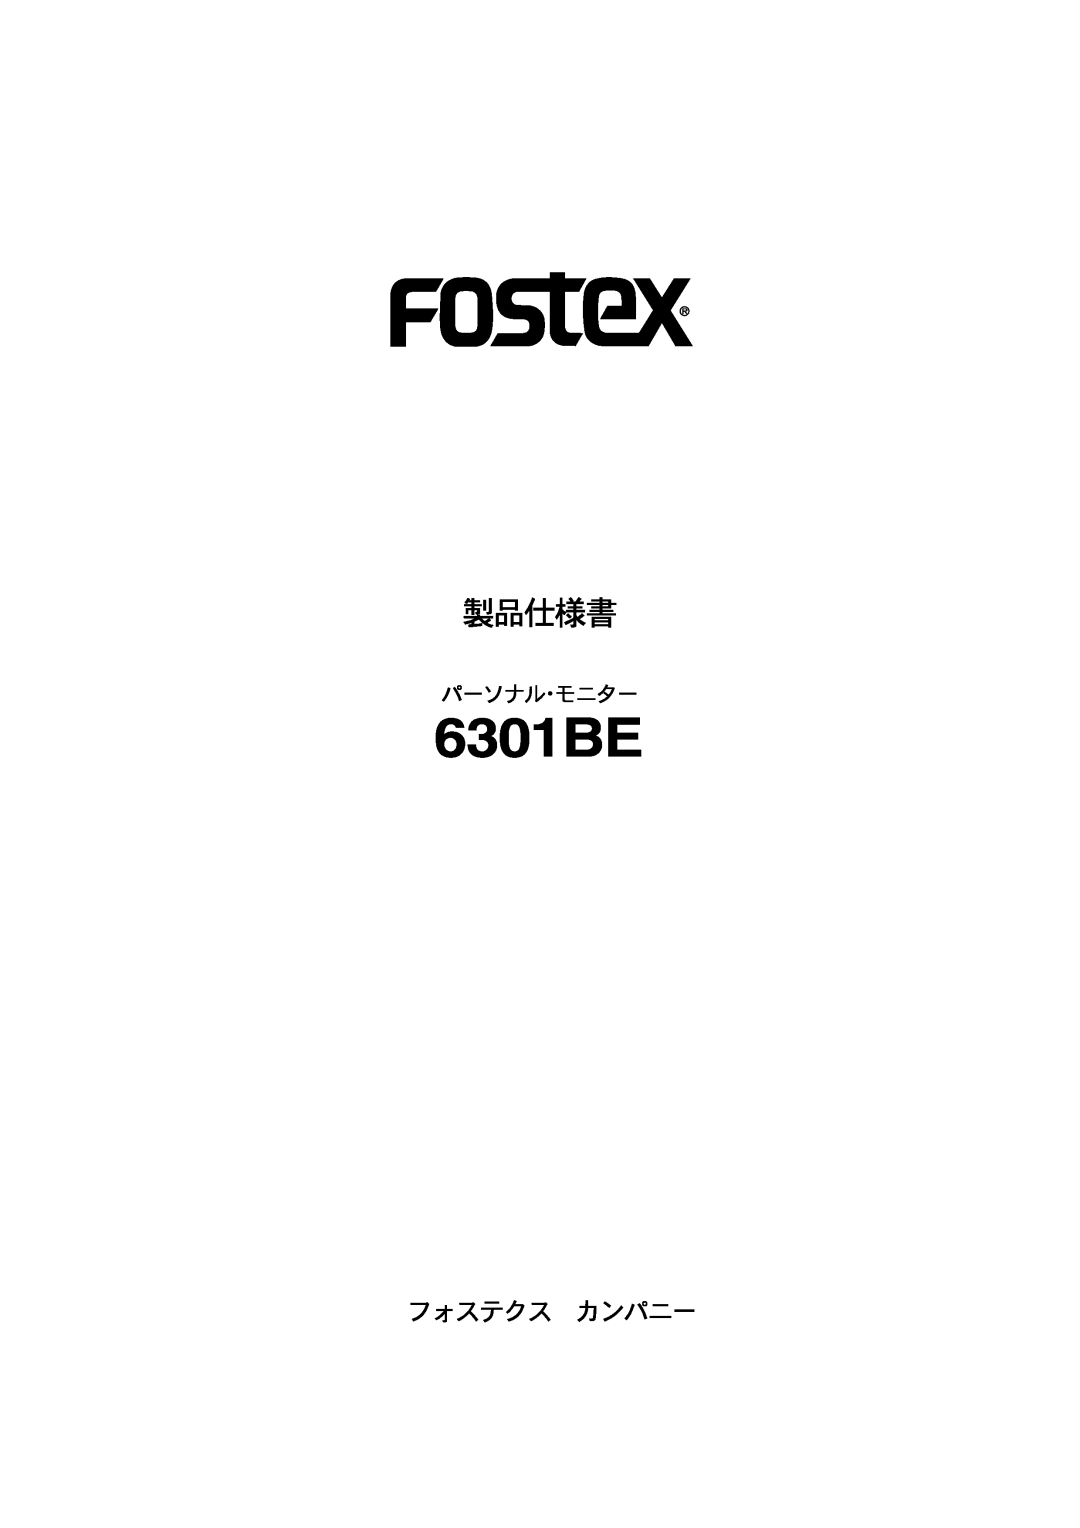 Fostex 6301BE manual パーソナル・モニター, 製品仕様書, フォステクス カンパニー 